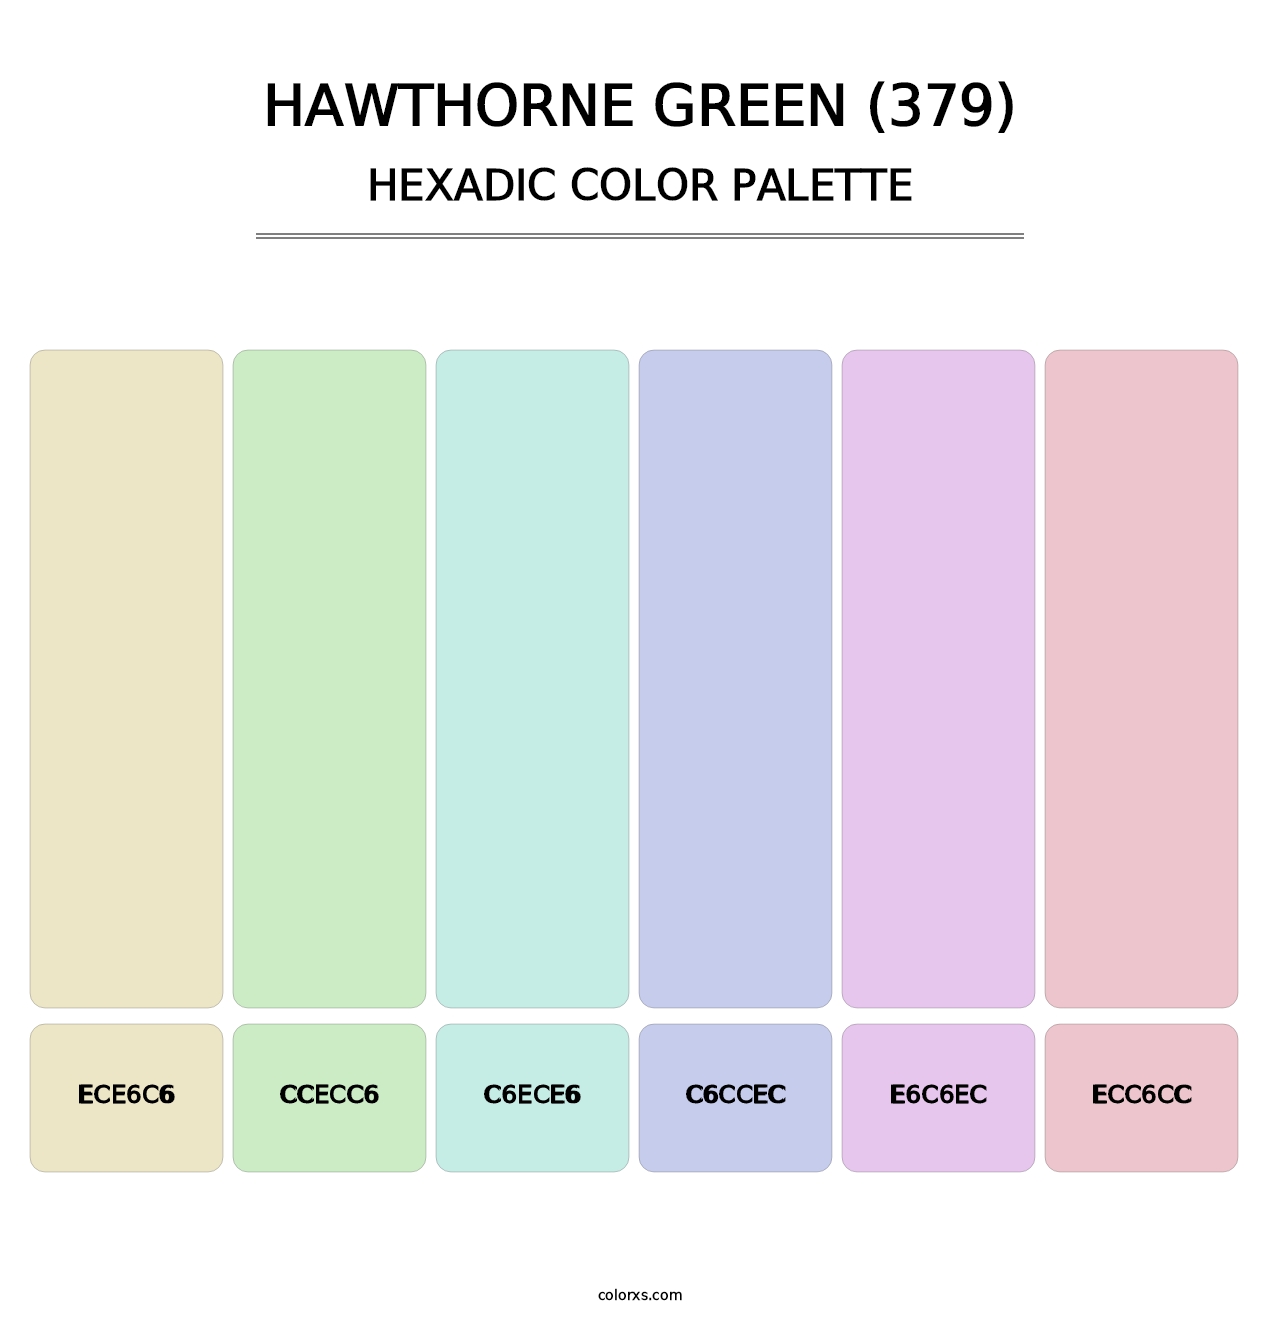 Hawthorne Green (379) - Hexadic Color Palette